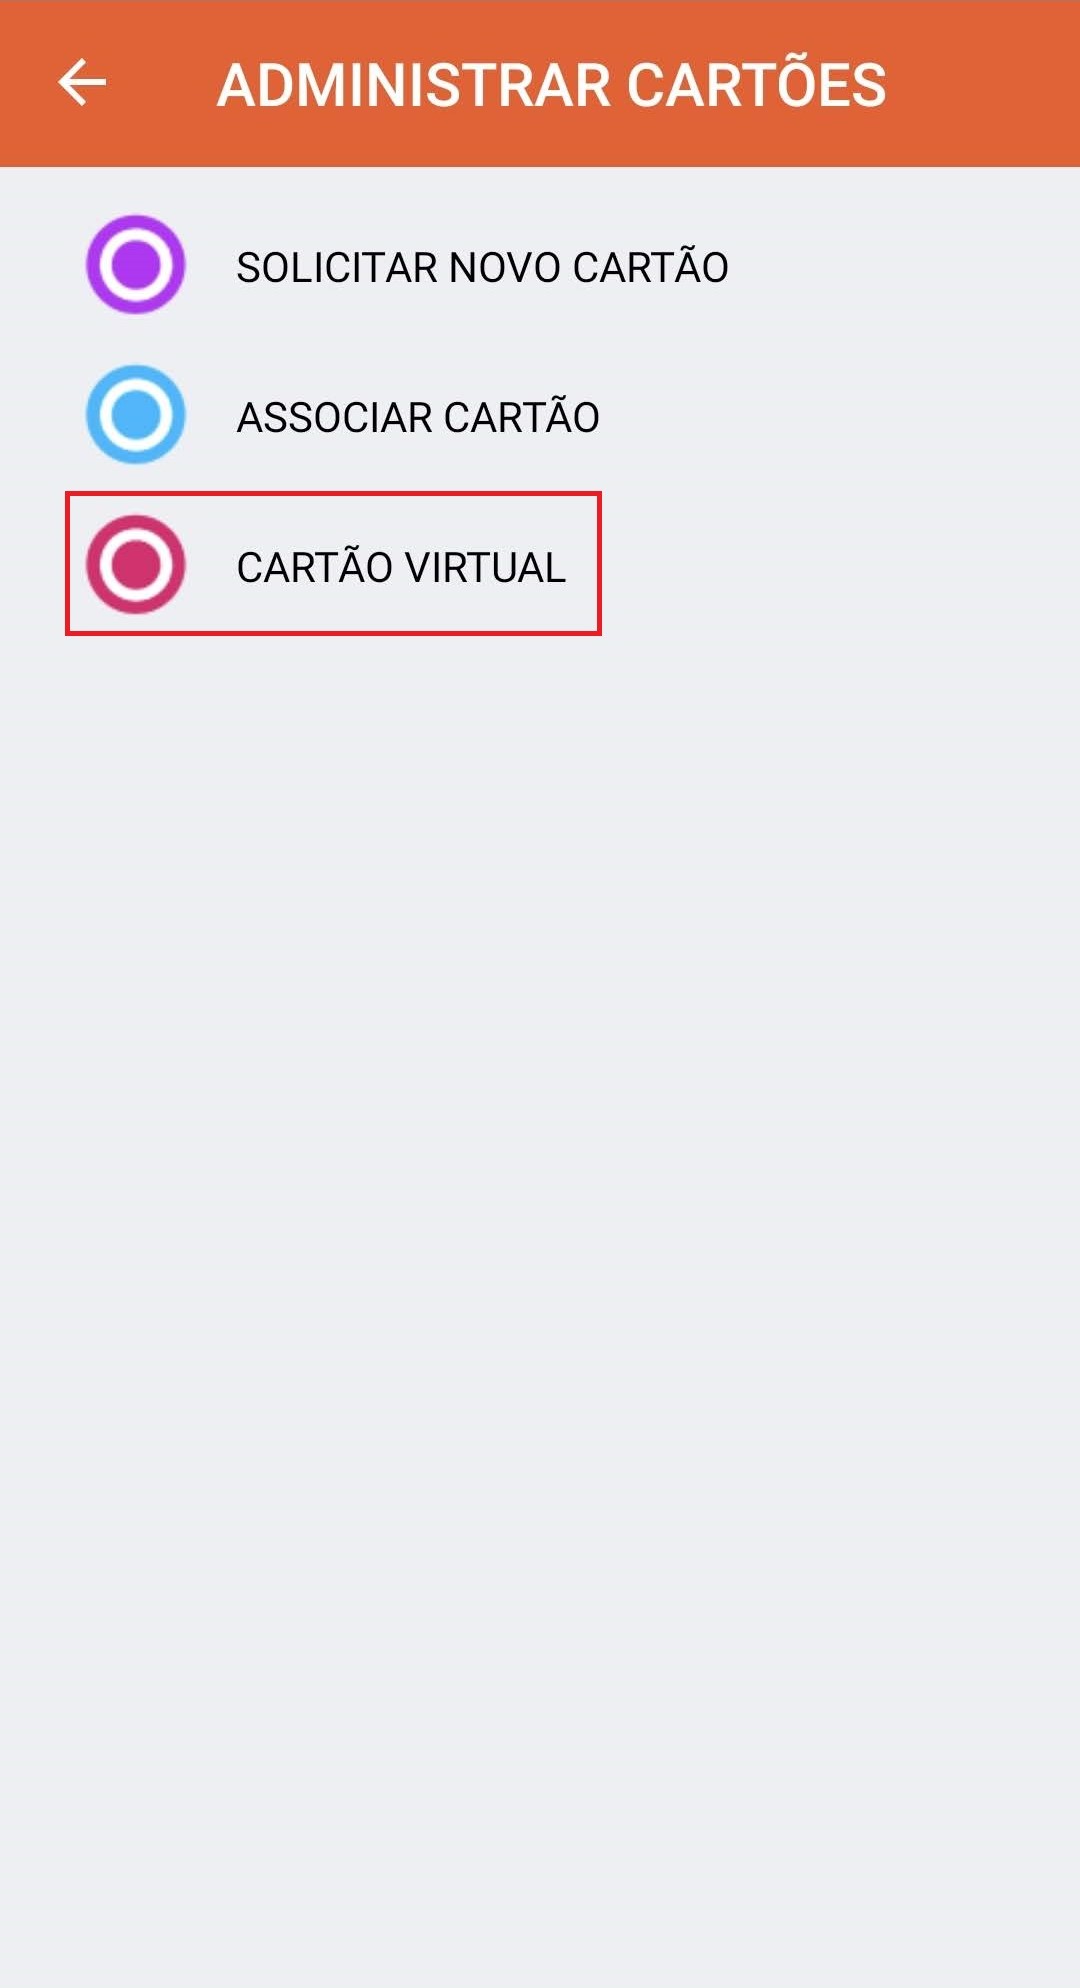 Cart_o_Virtual_-_1_-_Marcado.jpg